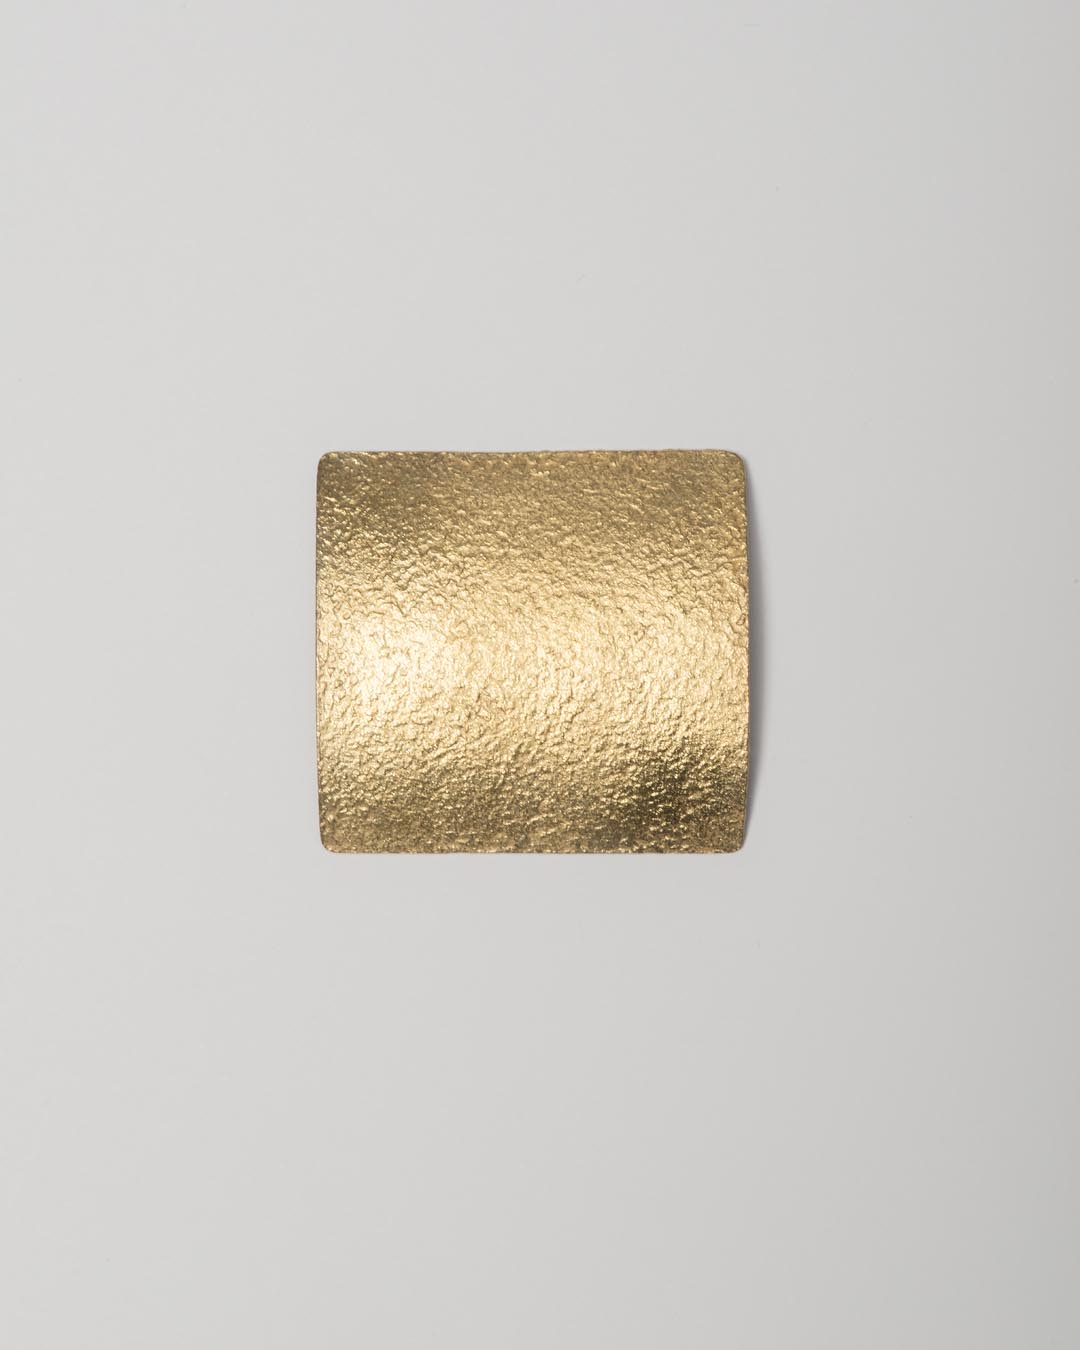 Yasuki Hiramatsu, untitled, brooch; gold-plated silver, 48 x 45 x 9 mm